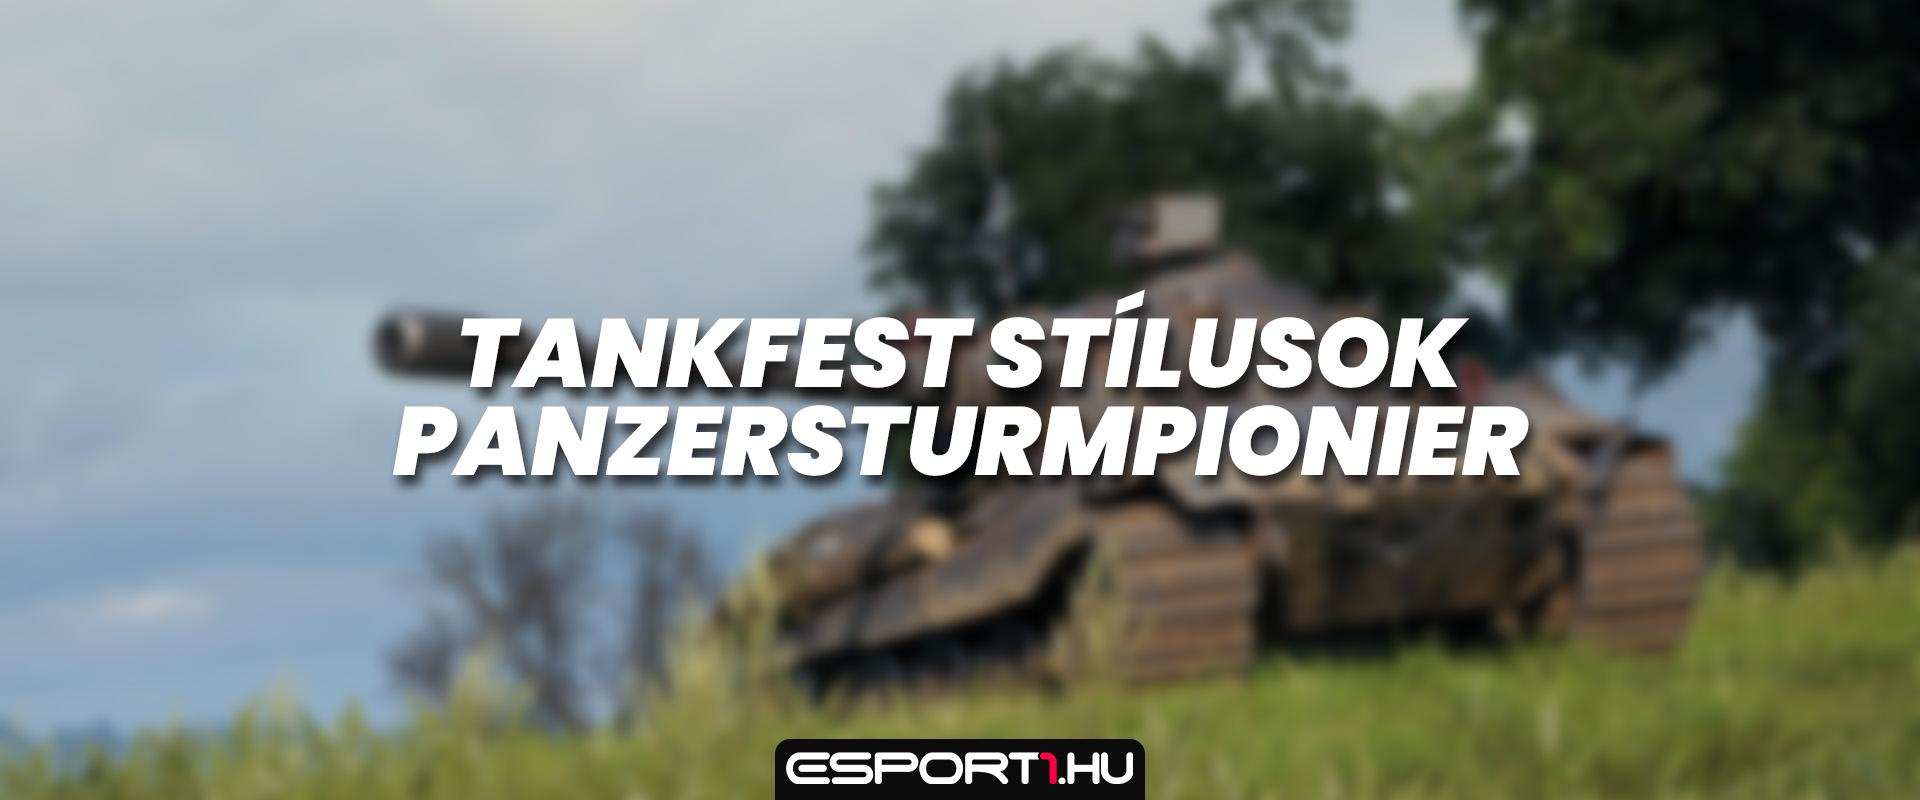 A Tankfest 3D-stílusai: Panzersturmpionier bemutató